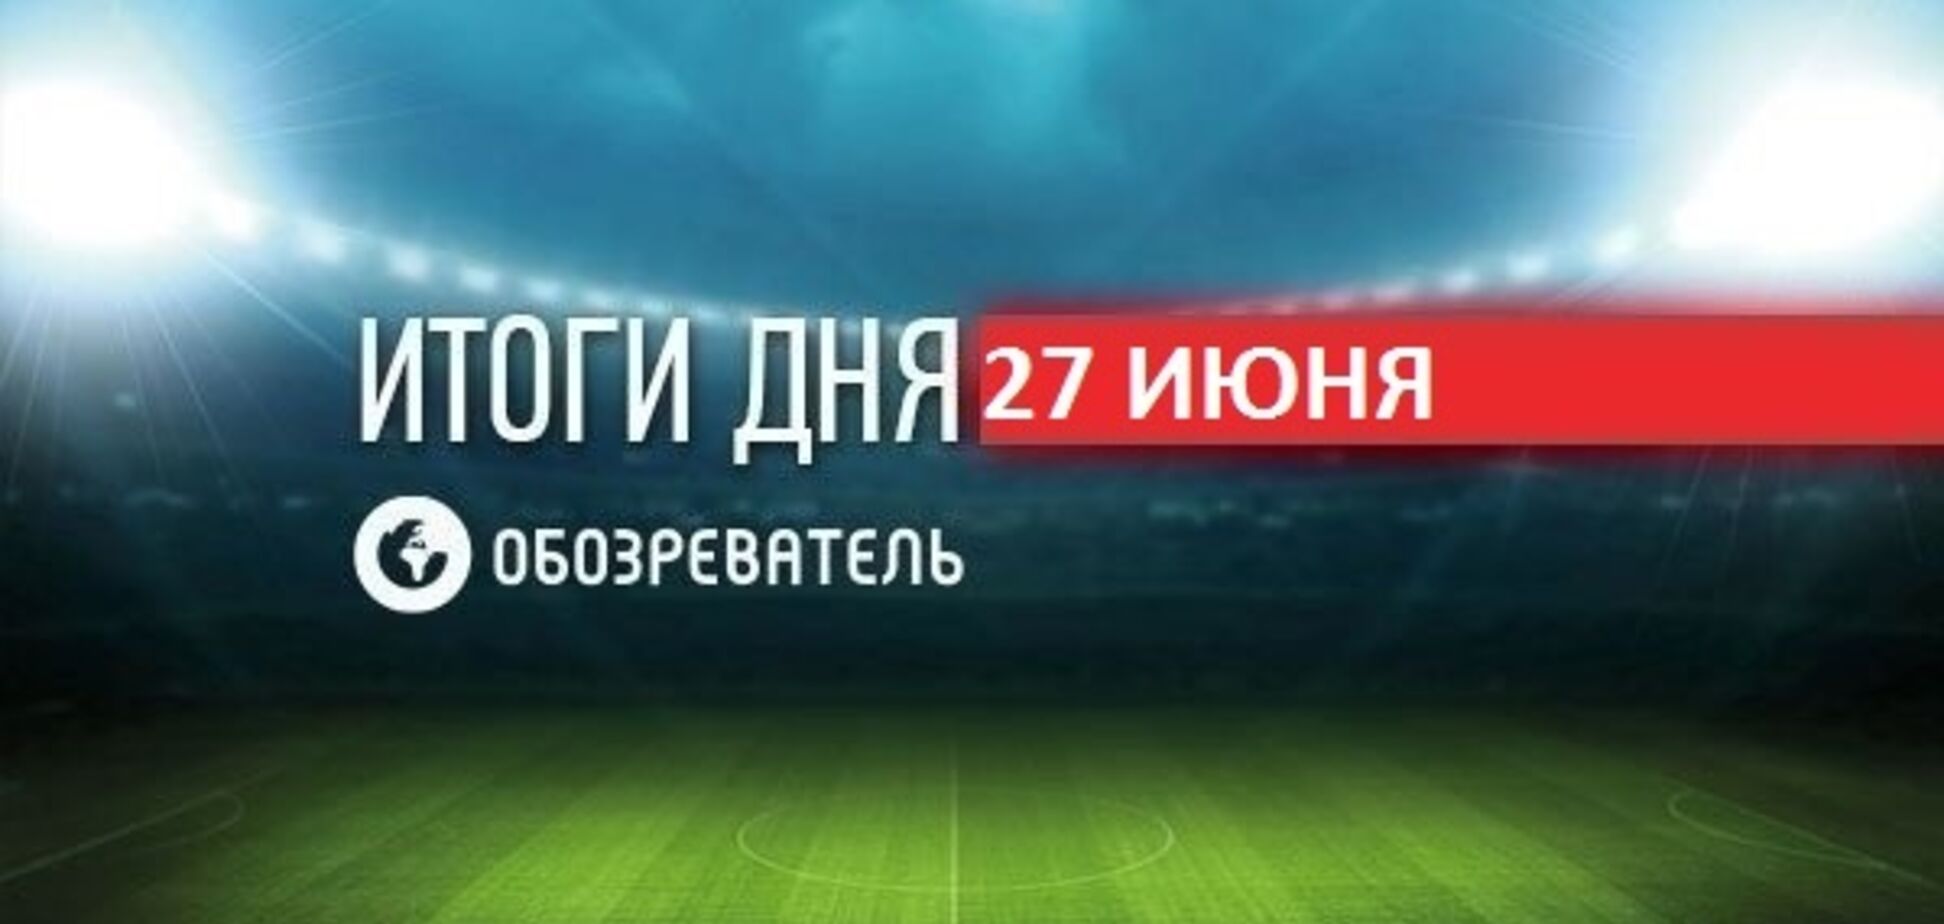 Ломаченко поразил невероятным трюком: спортивные итоги 27 июня